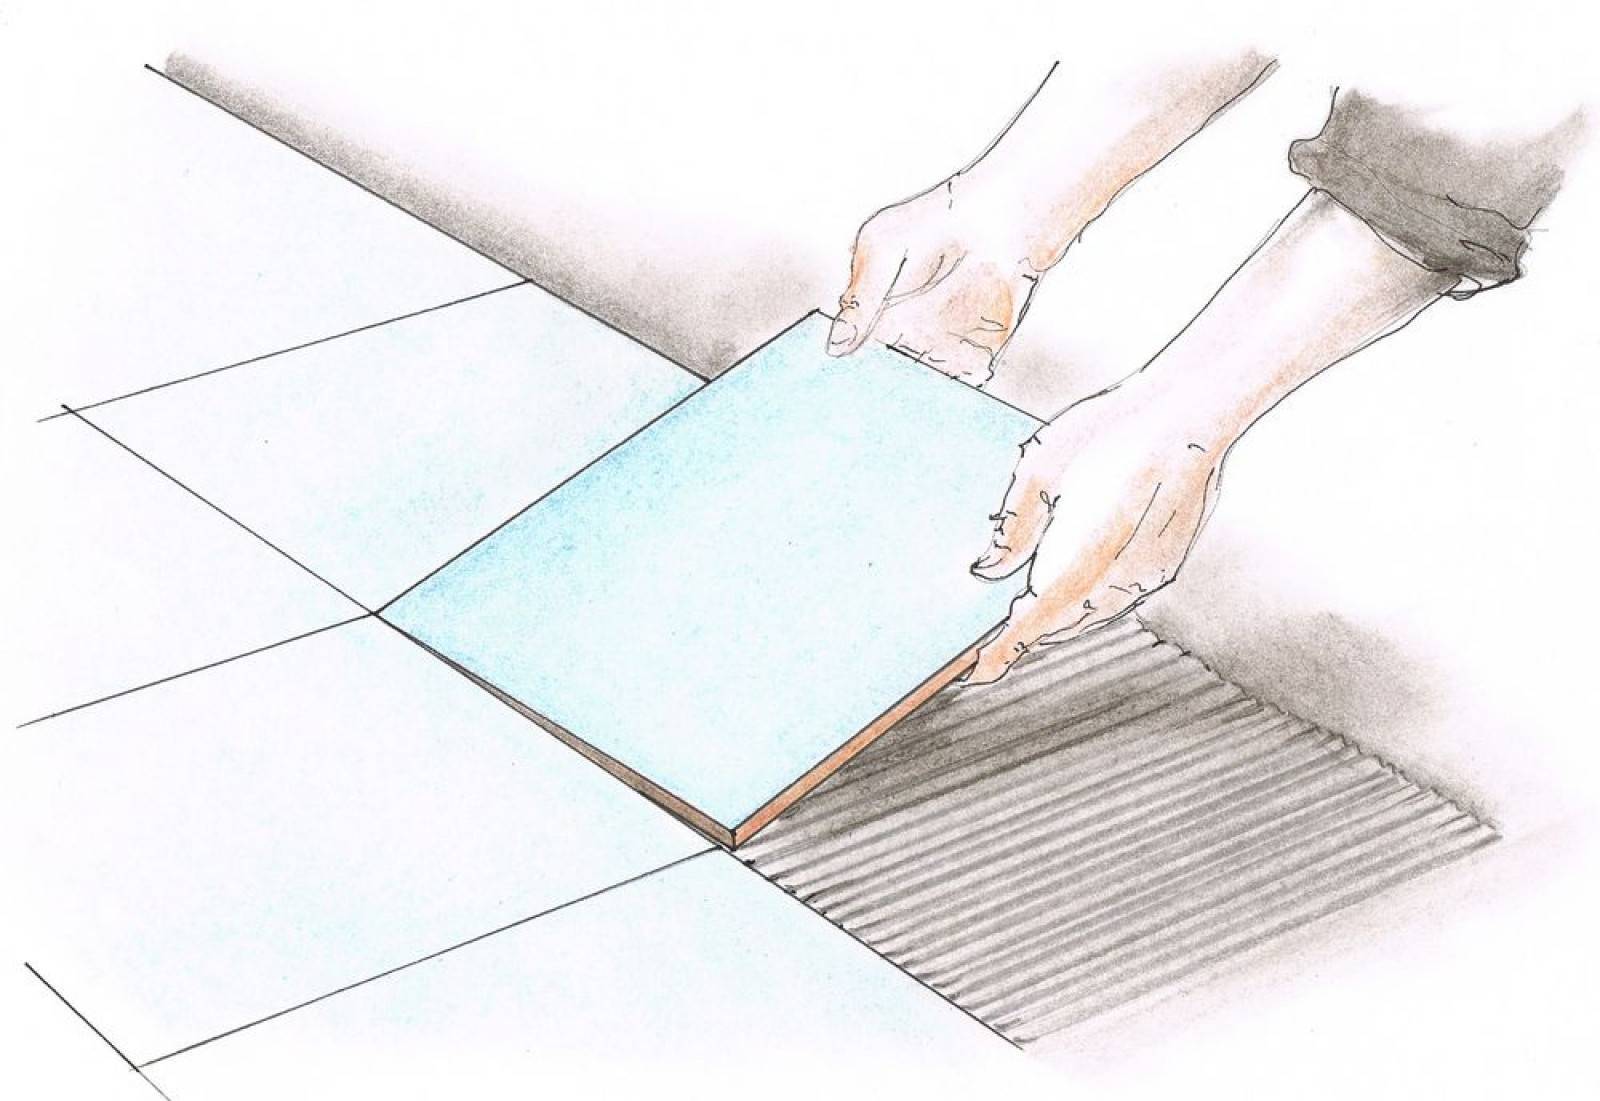 Укладка керамогранита на пол своими руками - иллюстрированная пошаговая инструкция